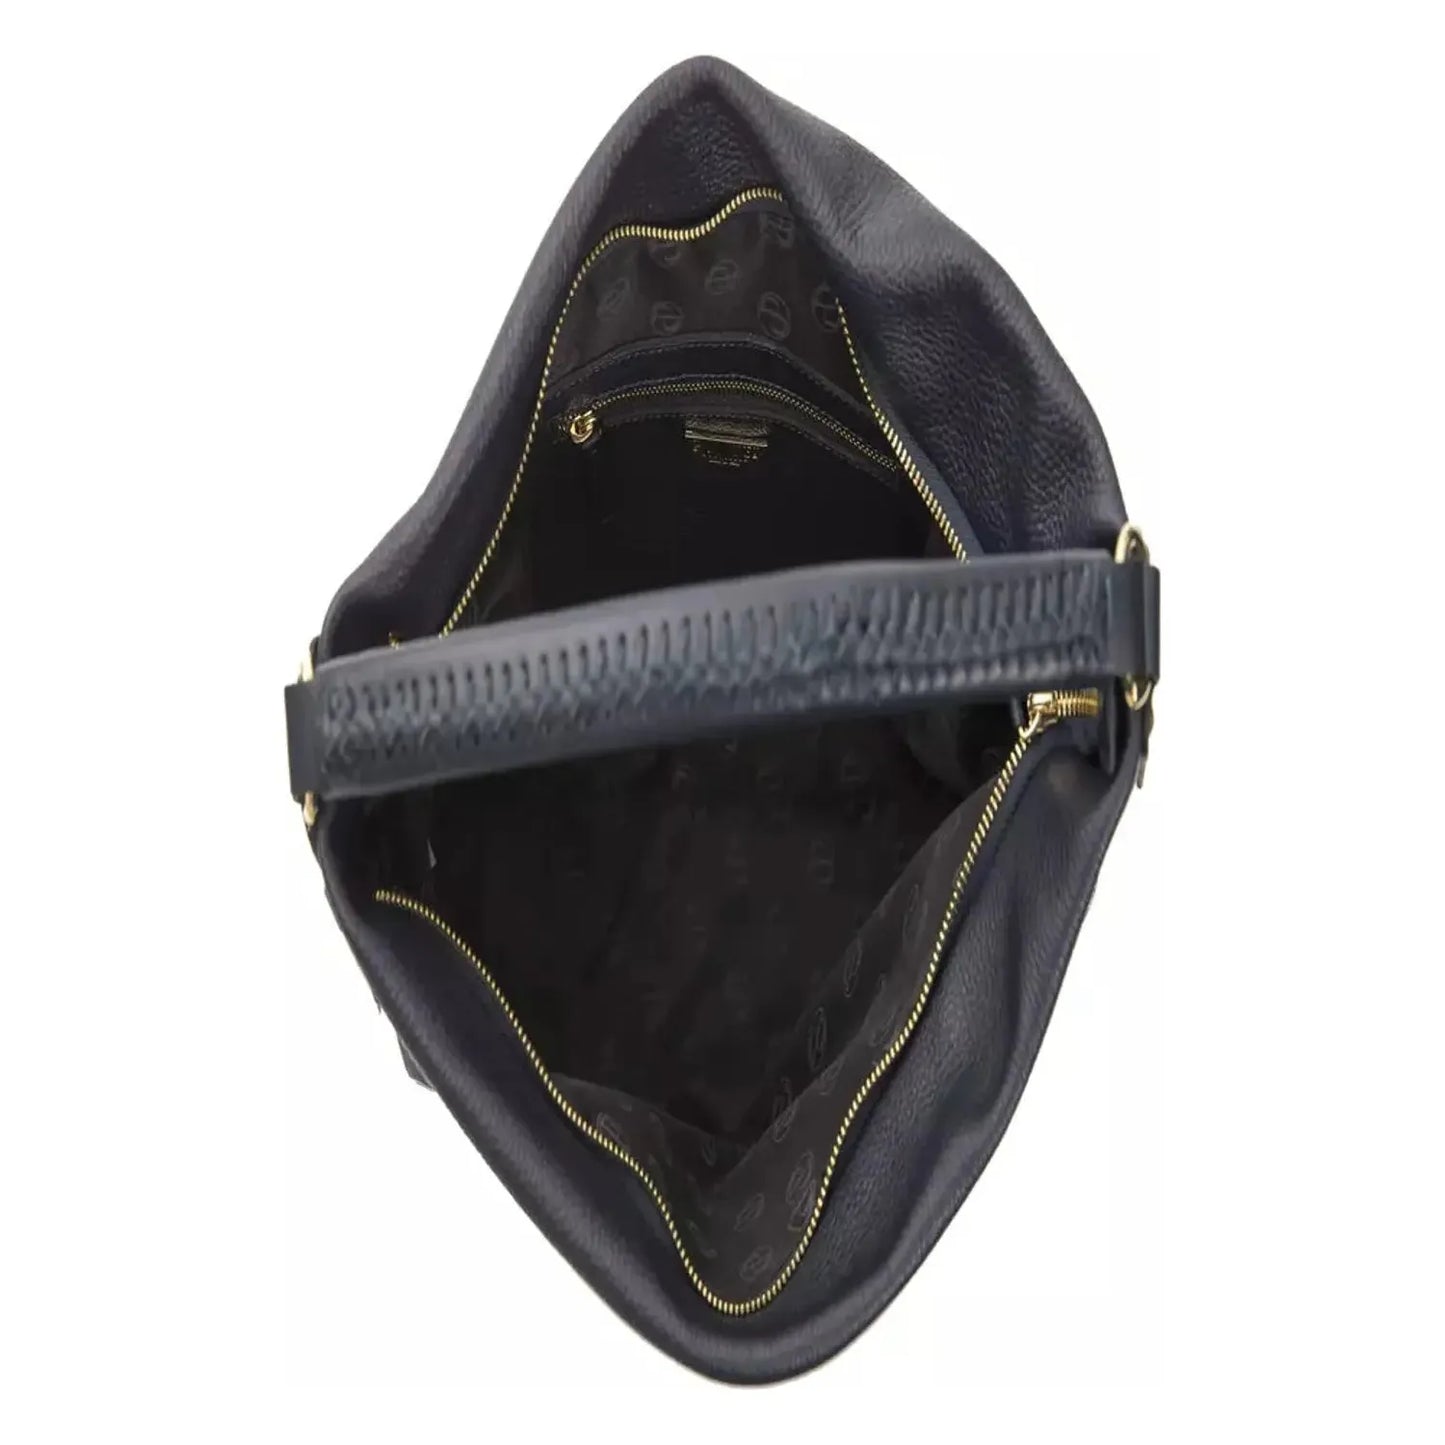 Pompei Donatella Chic Gray Leather Shoulder Bag with Logo Detail WOMAN SHOULDER BAGS gray-leather-shoulder-bag-3 stock_product_image_5801_2048148336-22-81608ef1-fe7.webp